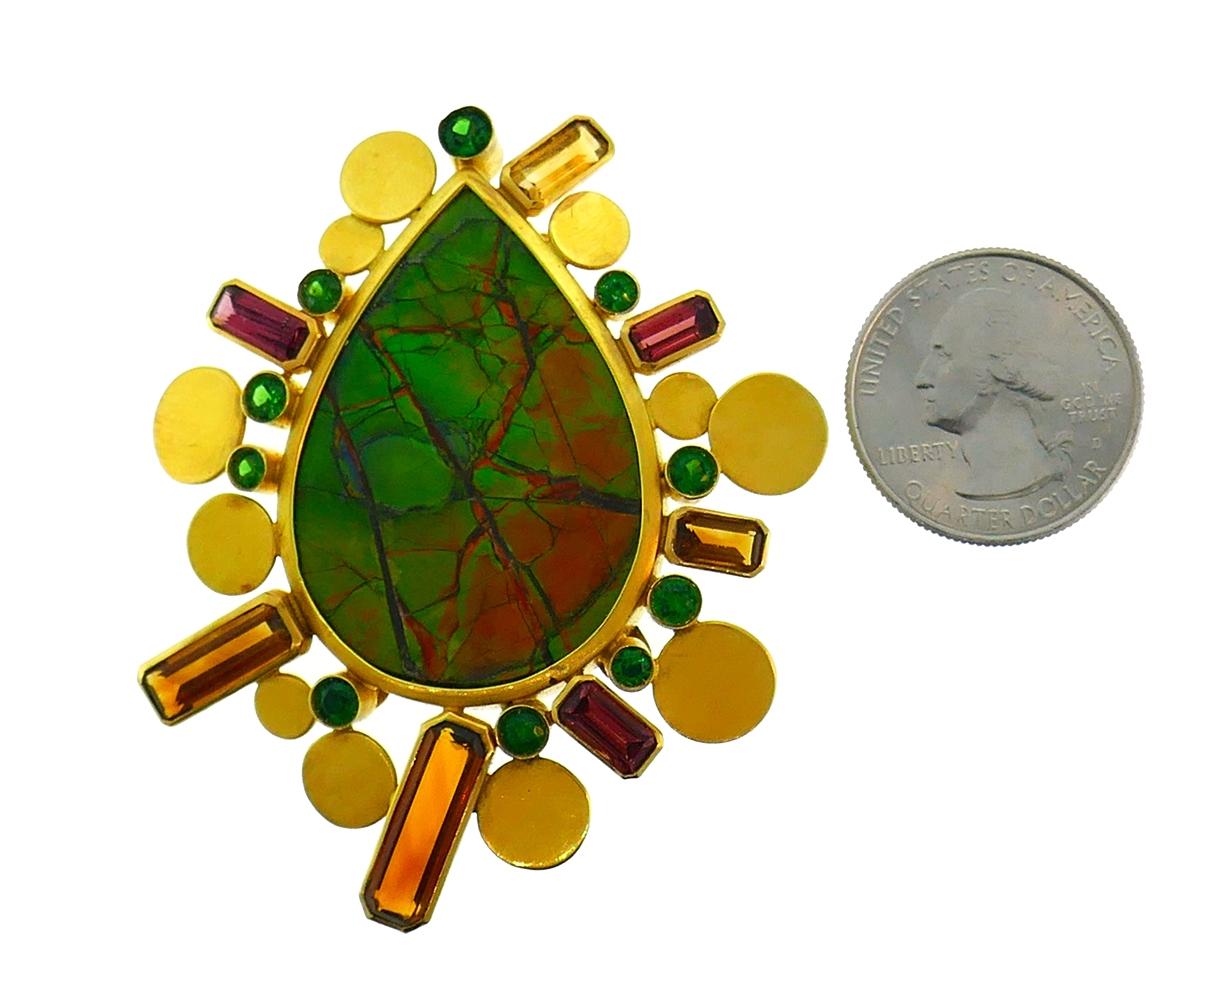 Clip/pendentif coloré et audacieux créé par Christine Escher en France dans les années 1990. 
Réalisée en or jaune 18 carats, la broche présente une ammolite en forme de poire rehaussée de grenats à facettes.
Mesures : 6,5 x 5,4 cm (2-1/2 x 2-1/8